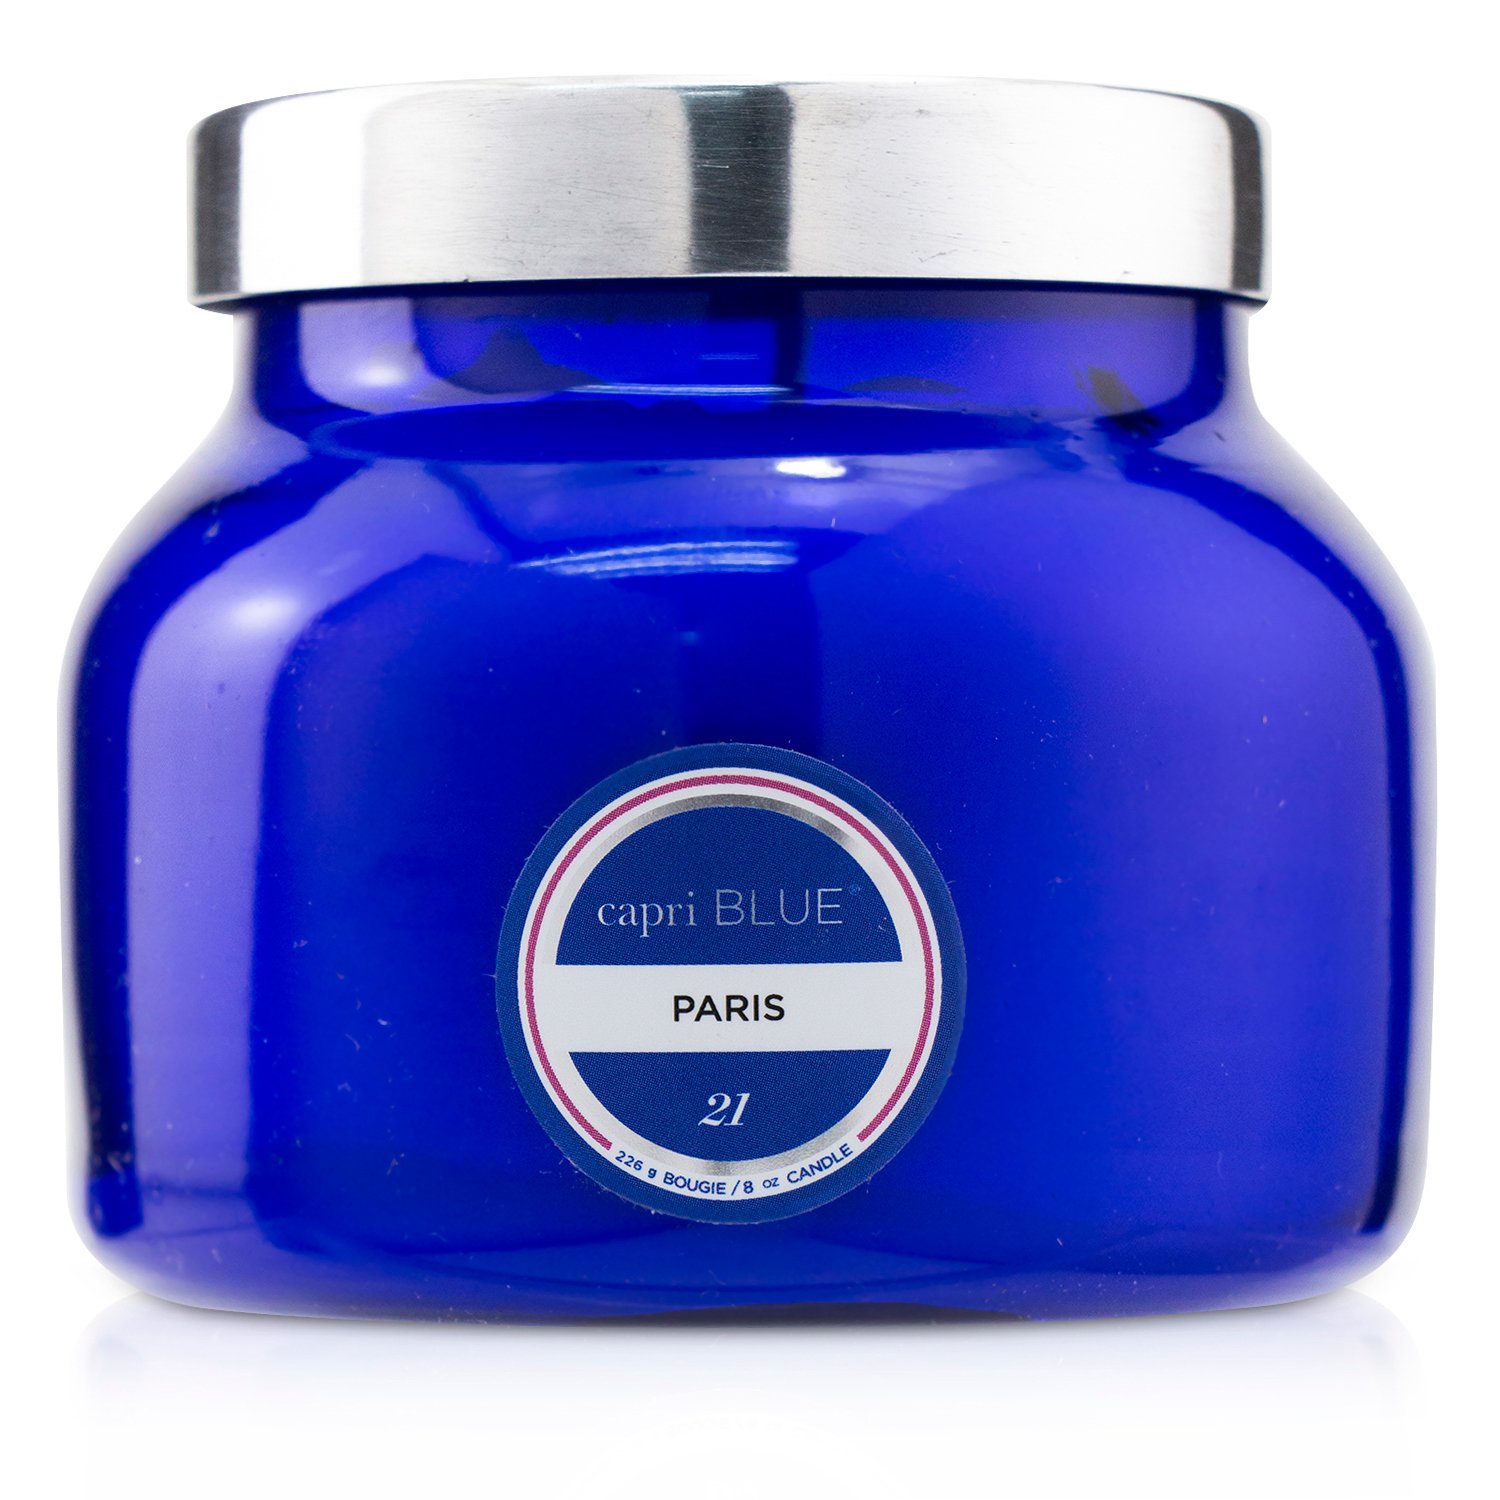 Capri Blue Blue Jar Candle - Paris 226g/8oz